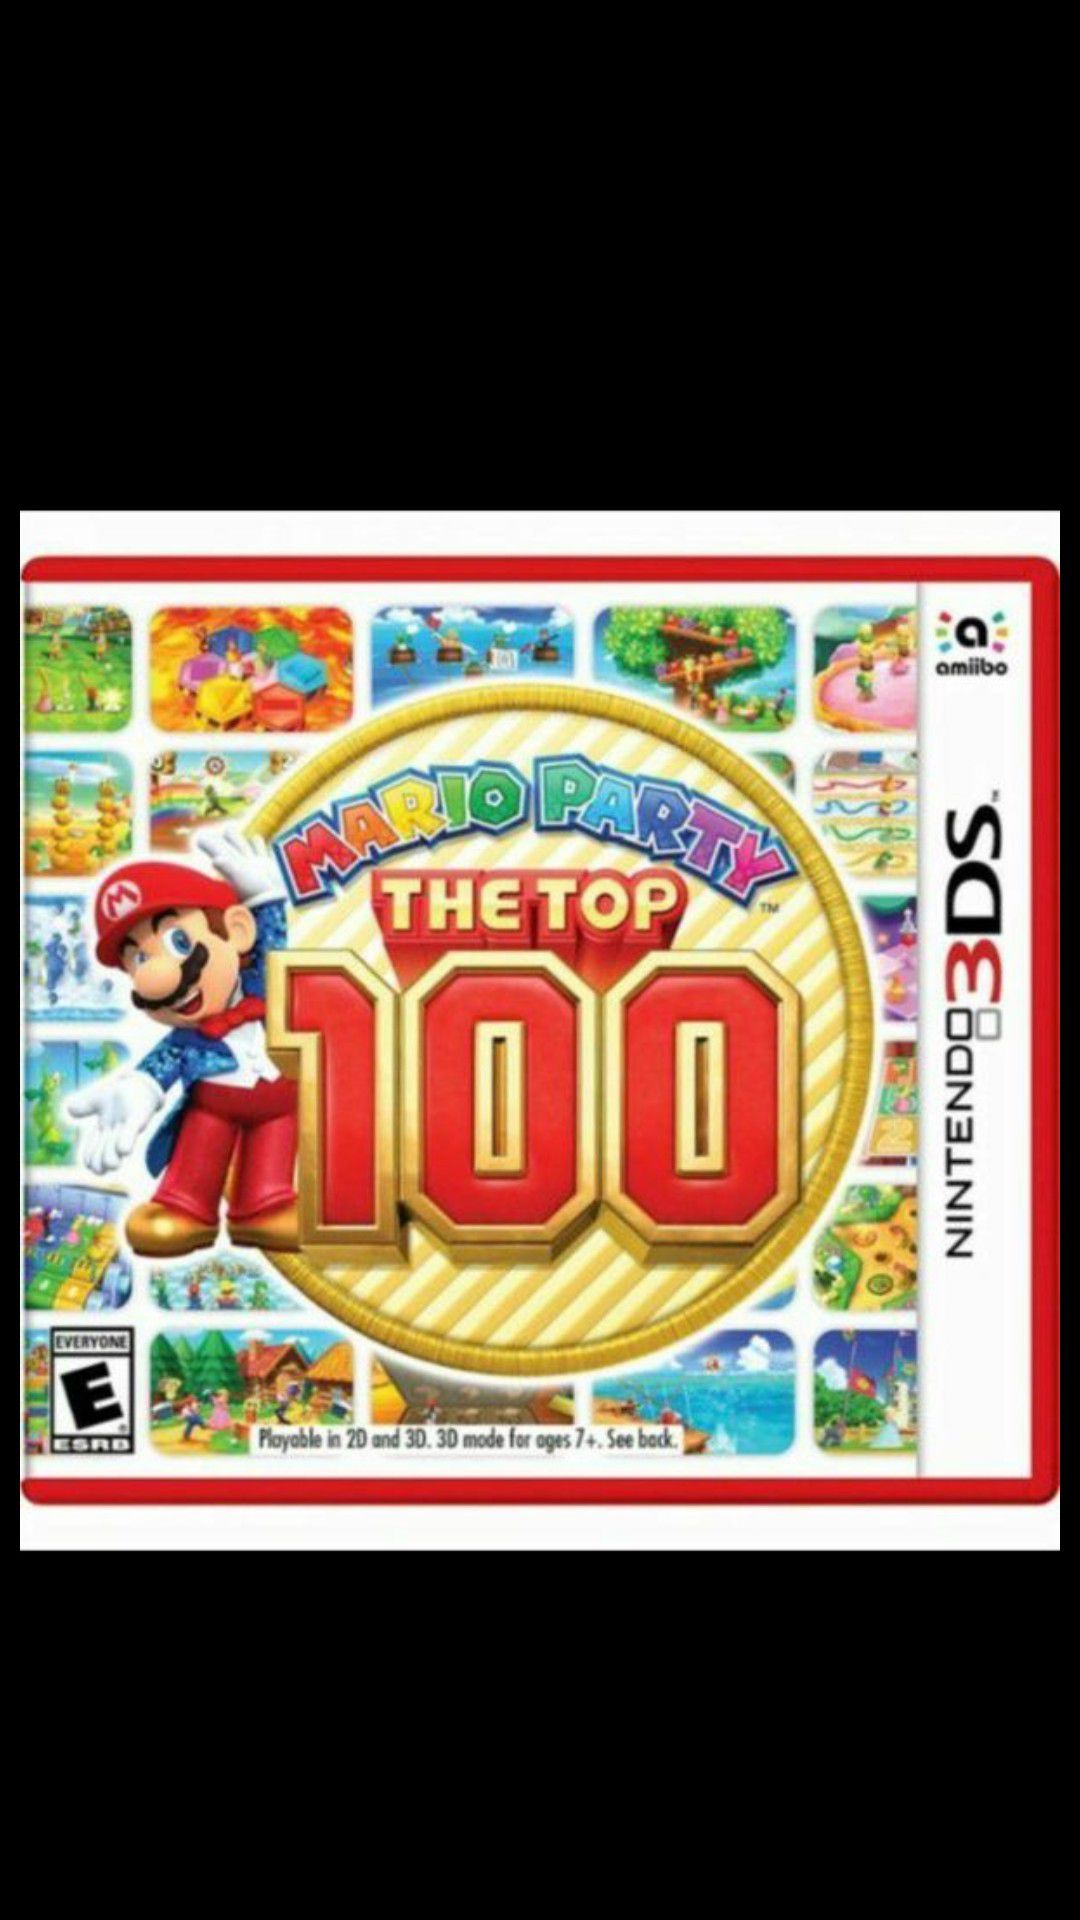 Mario party: Top 100